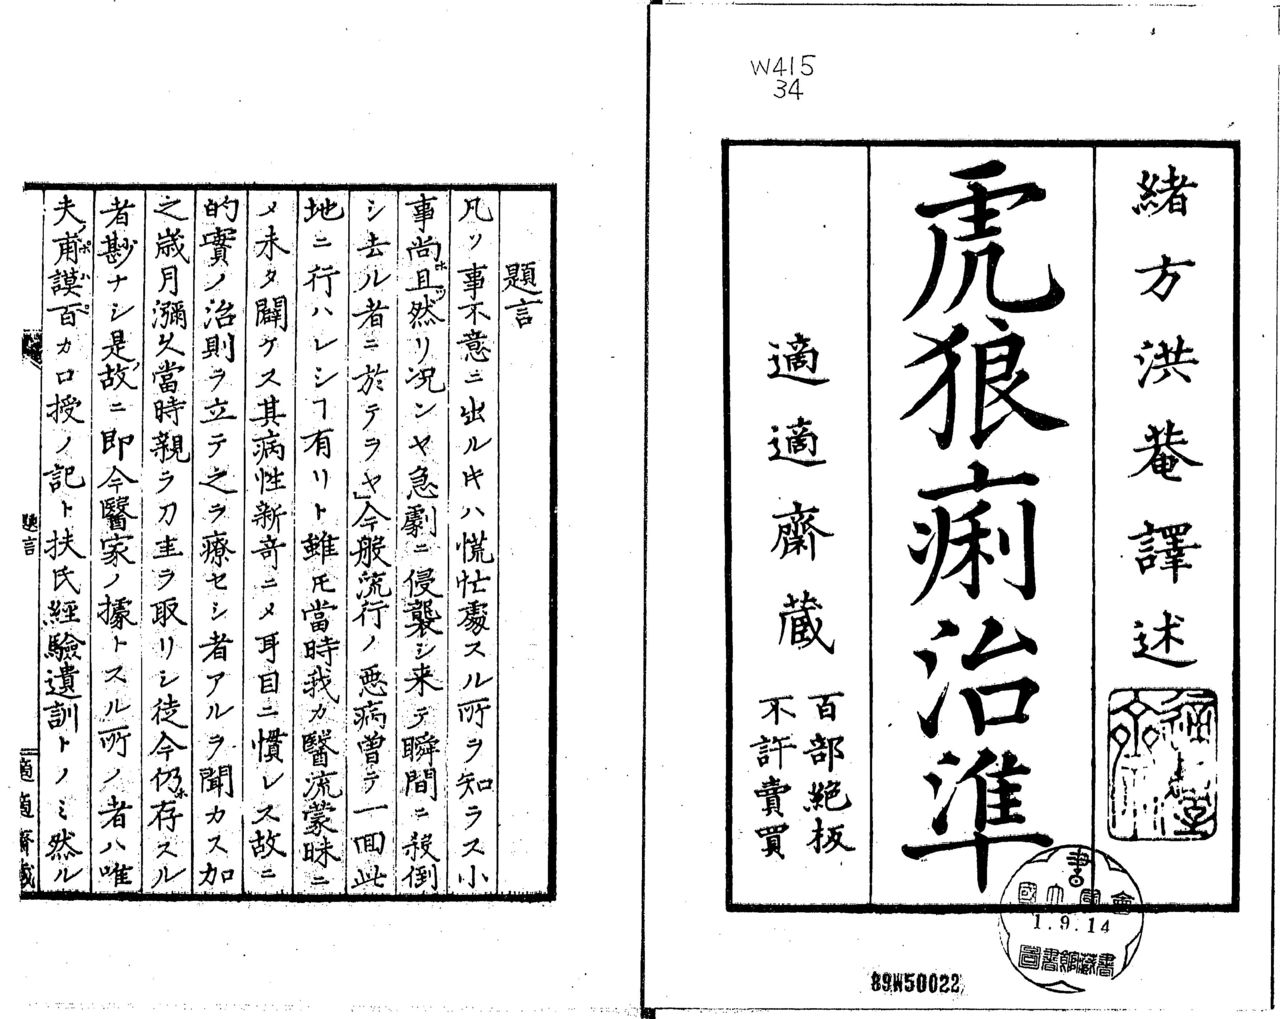  كتيب (أوغاتا كوآن) العلاجي (Korori chijun) (دليل علاج الكوليرا) الذي أعده استنادًا على ملخصات لثلاث كتب طبية أجنبية. (الصورة مقدمة من مكتبة البرلمان الياباني الوطنية)